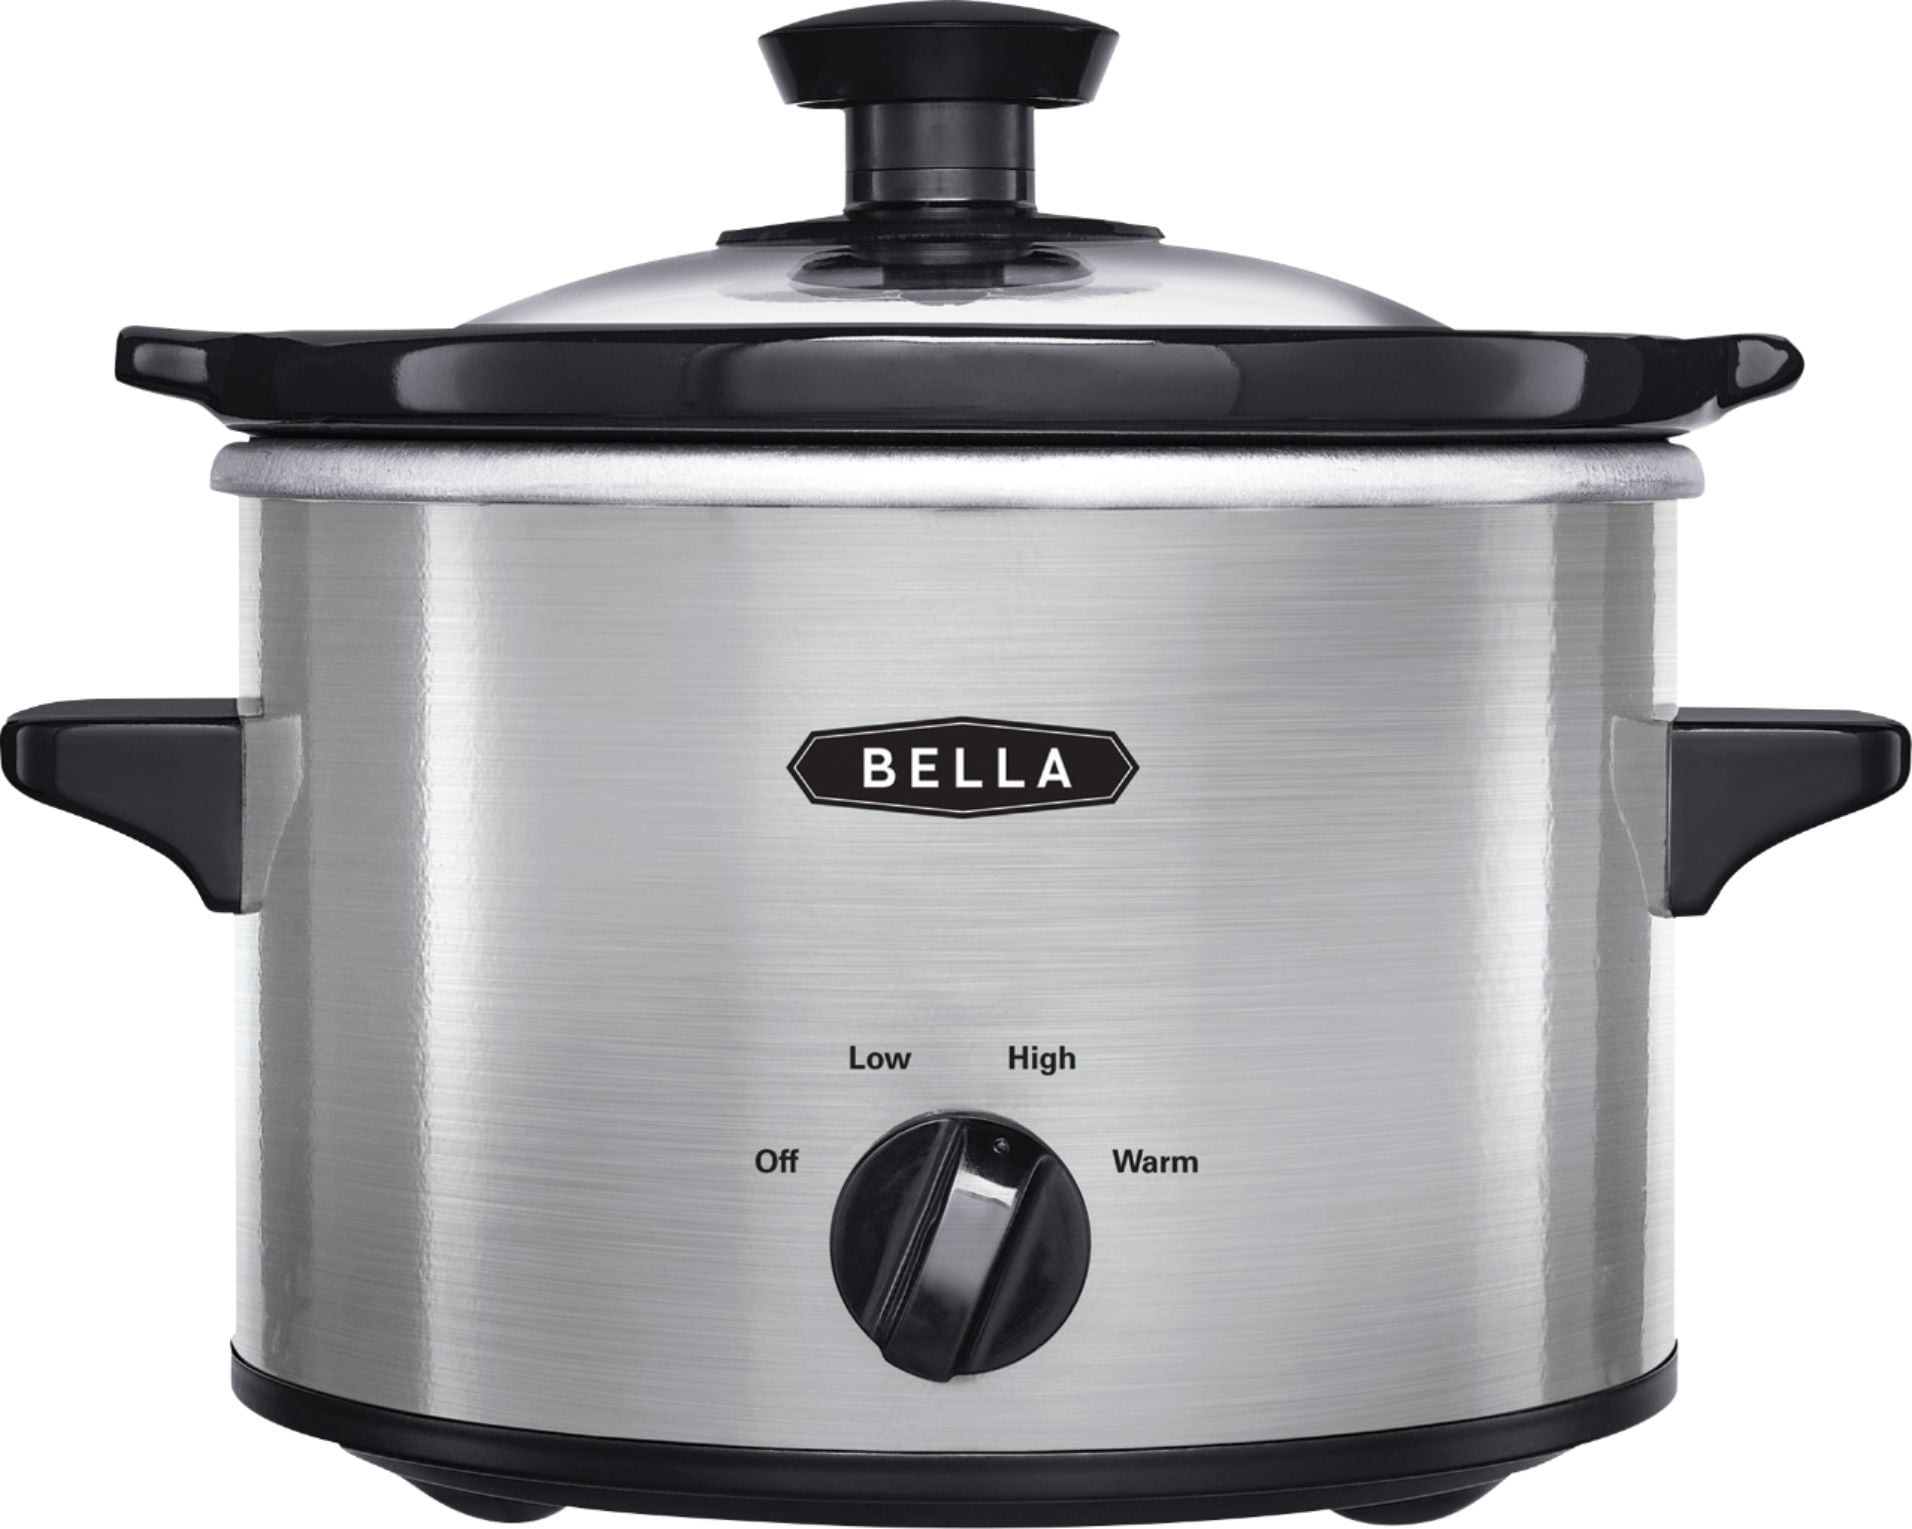 Bella 1.5-Quart Slow Cooker Only $6.99 (Reg. $13)